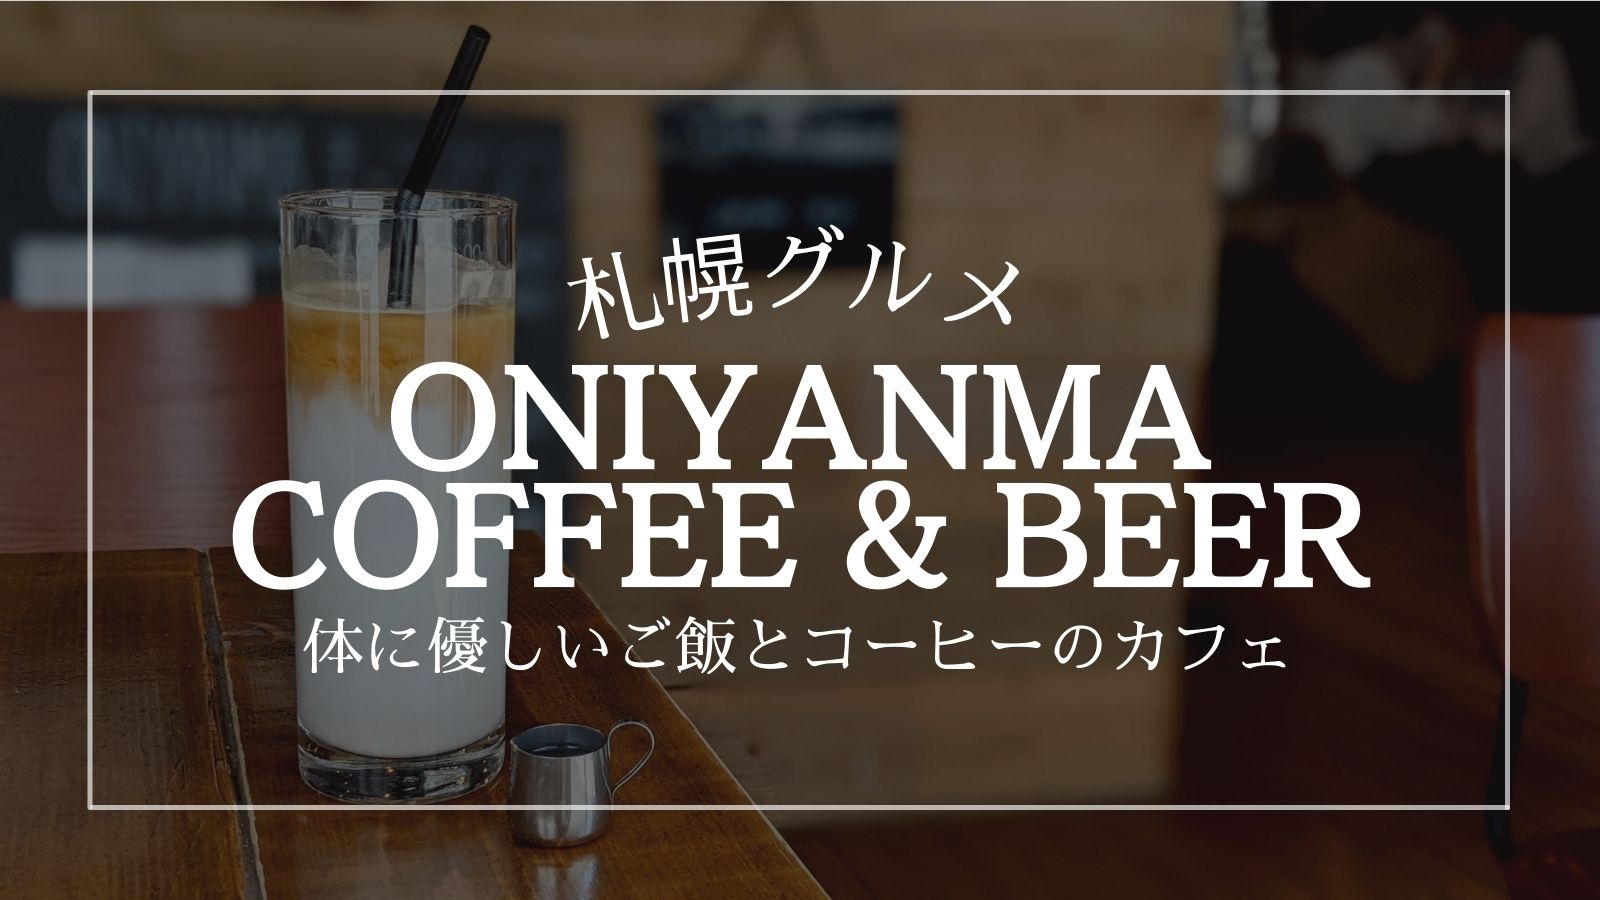 オニヤンマコーヒー 大通 札幌